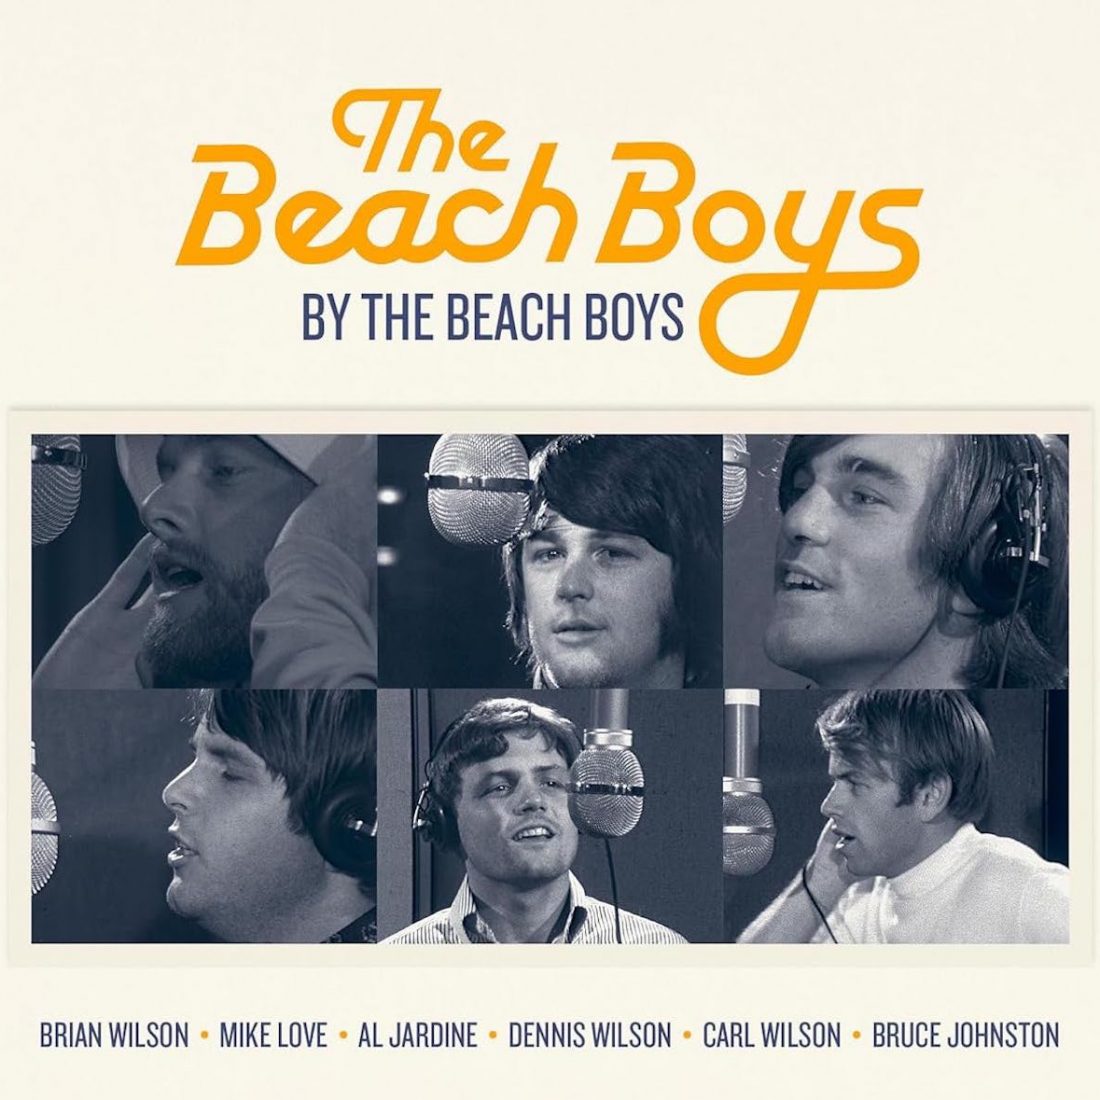 The Beach Boys By The Beach Boys book